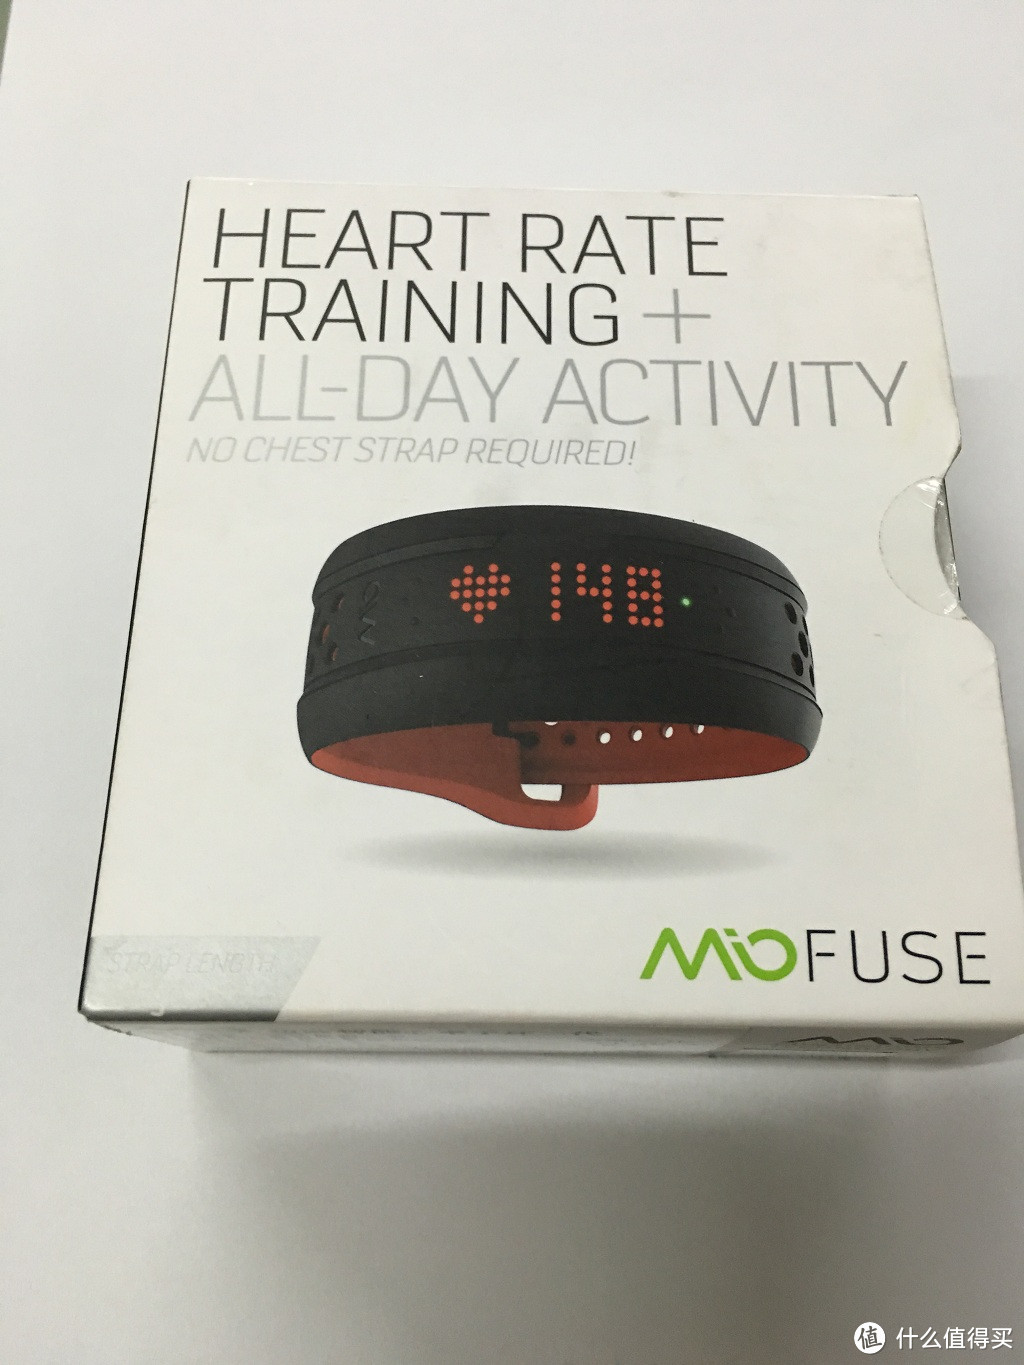 以跑步的名义买买买之二，Mio 迈欧 Fuse 智能心率手环开箱使用评测以及惯例吐槽